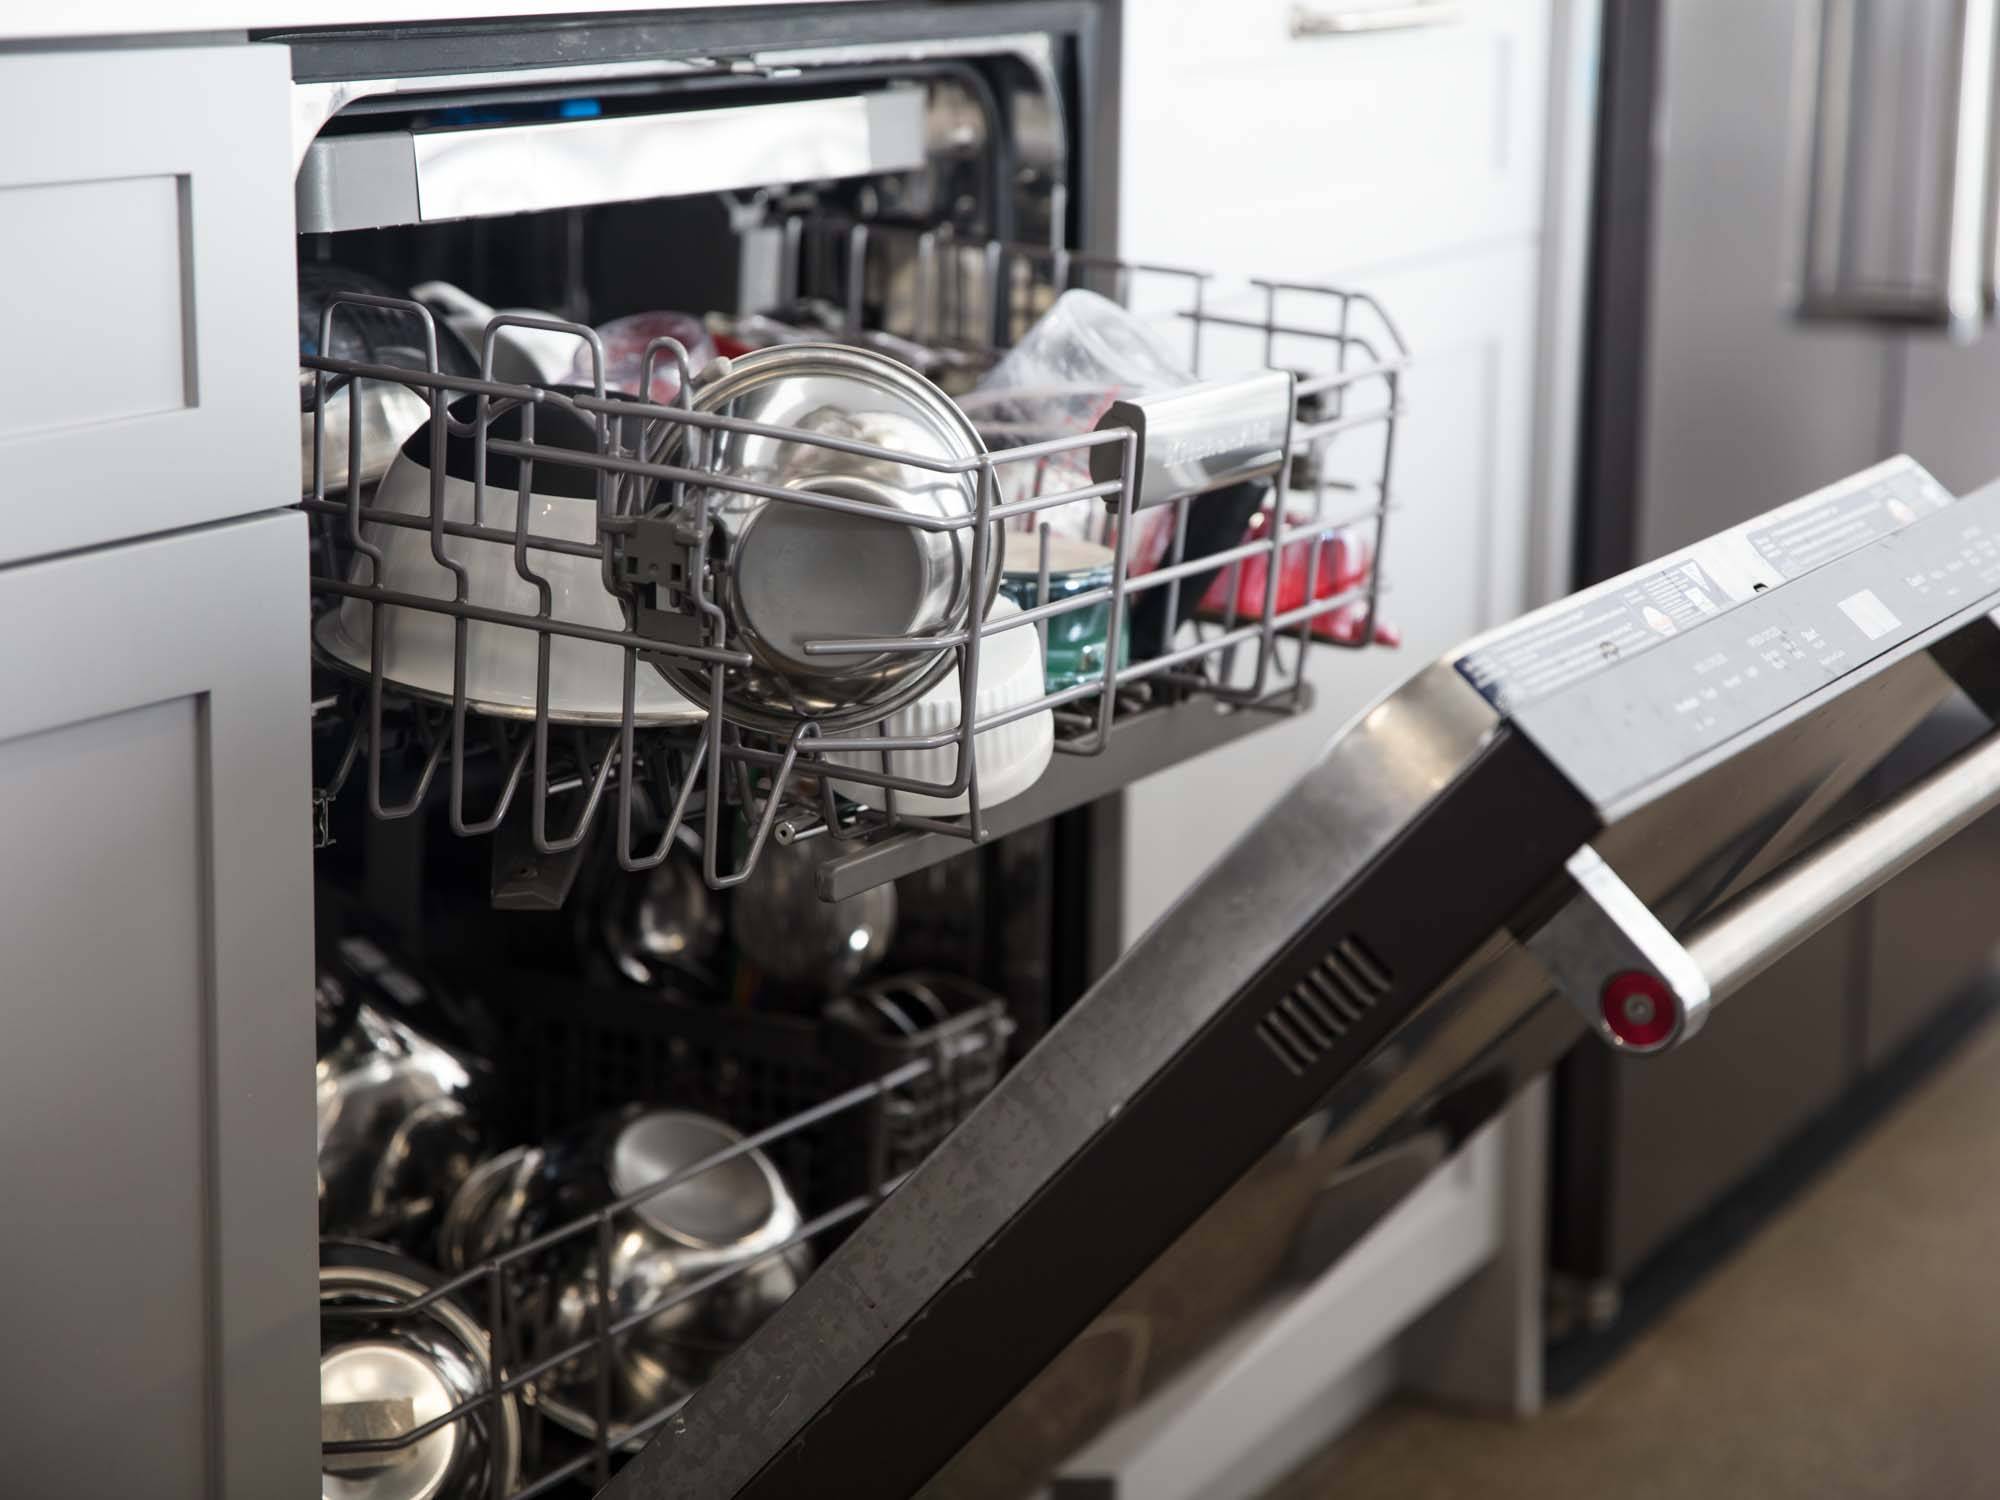 Как пользоваться посудомоечной машиной правильно — первый запуск и последующая эксплуатация